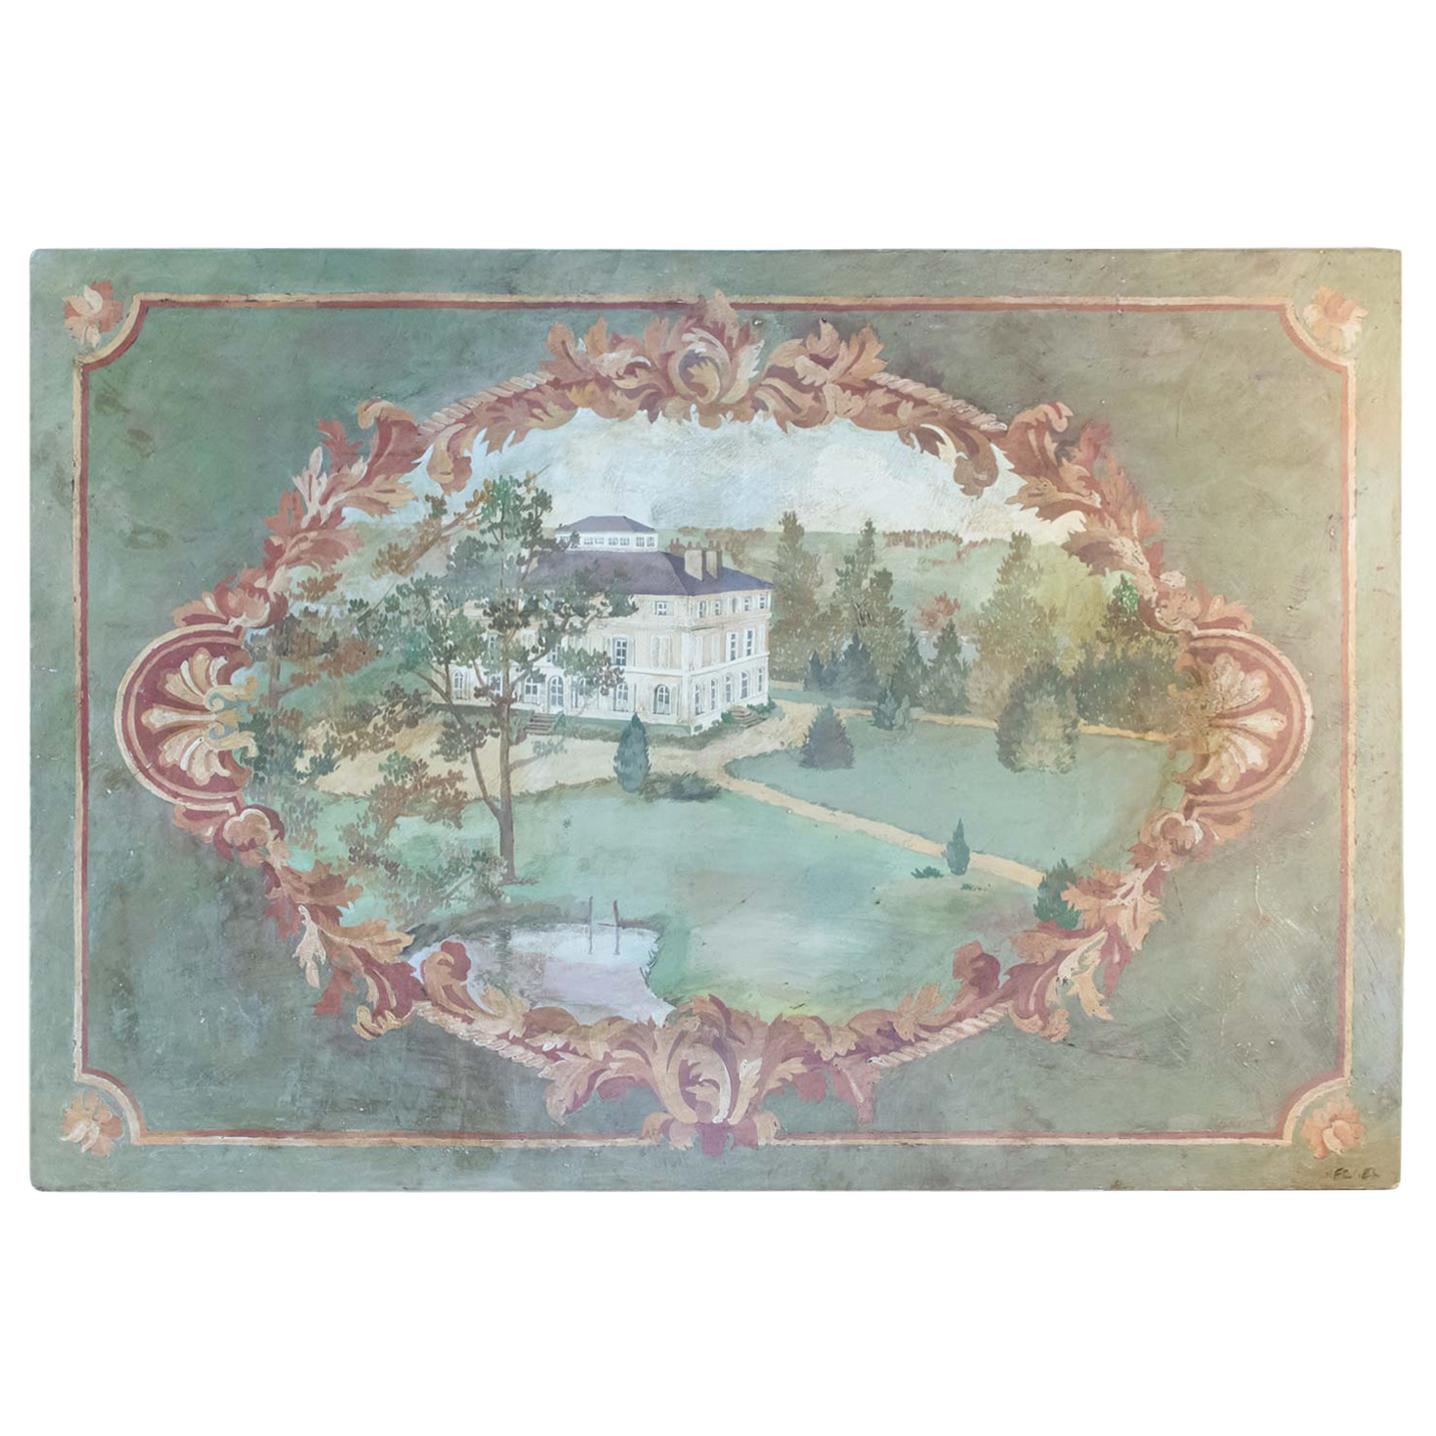 Oil on Canvas 20th Century of the Chateau de la Marche en Nievre